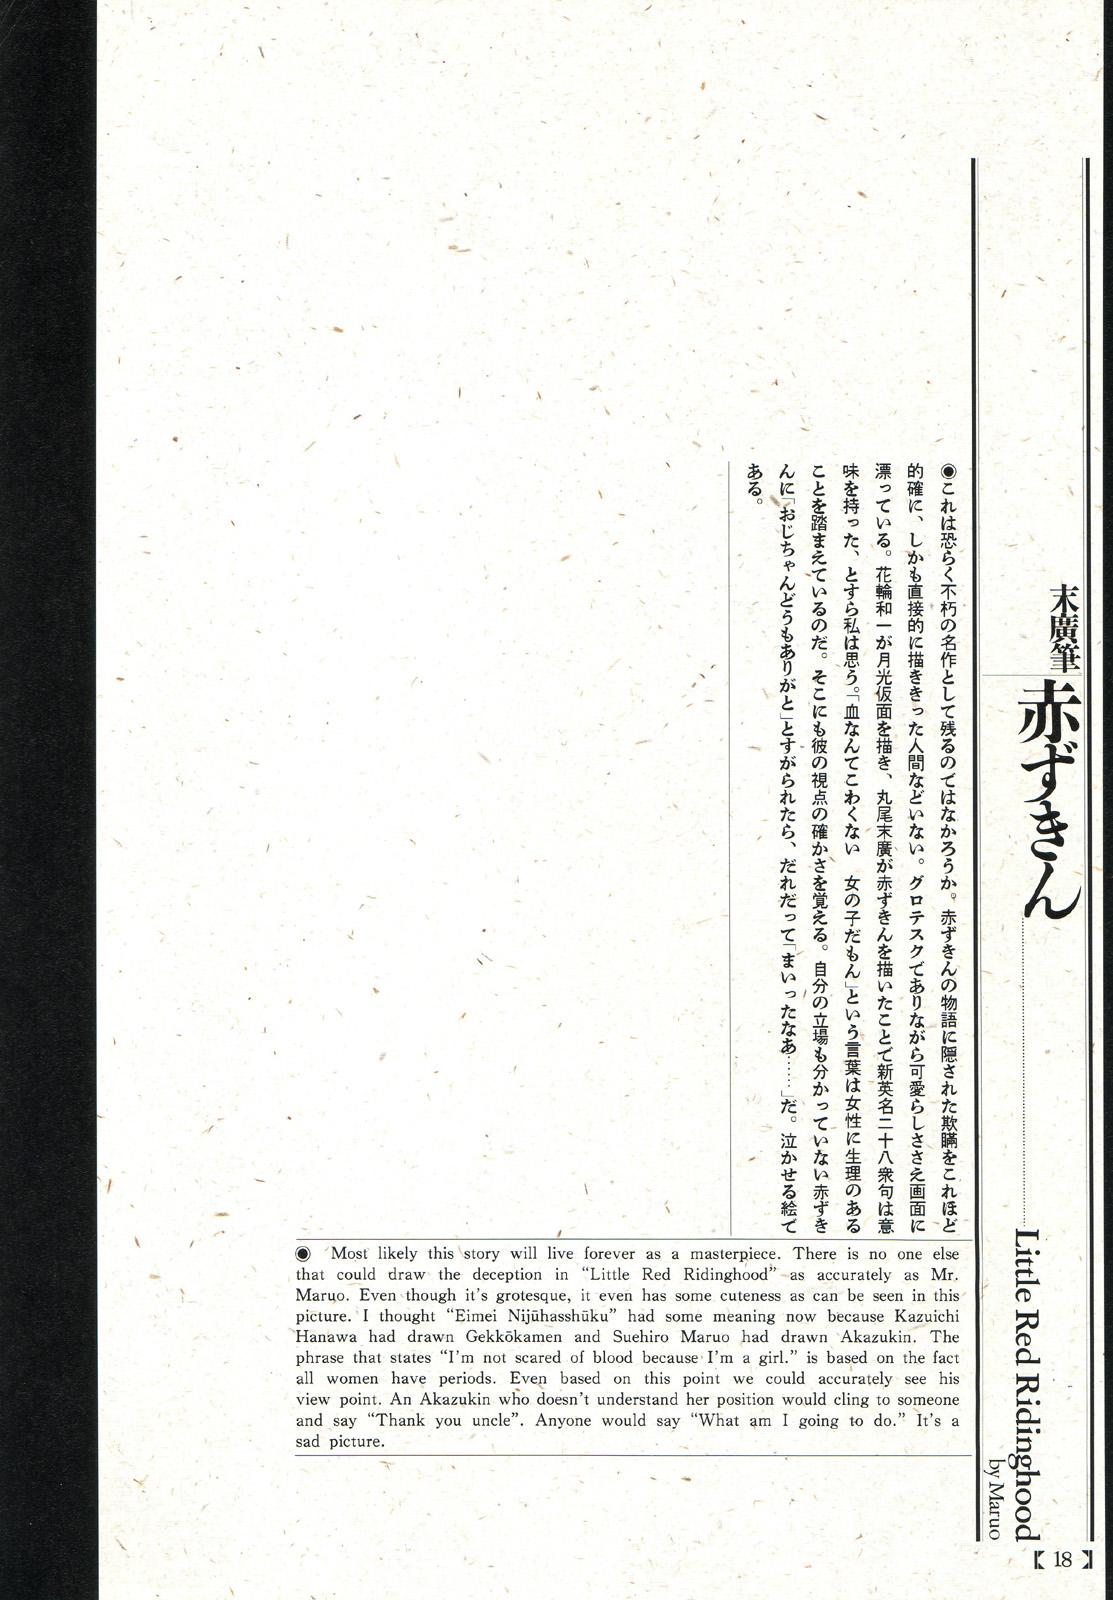 江戸昭和競作 - Bloody Ukiyo-e in 1866 & 1988 13